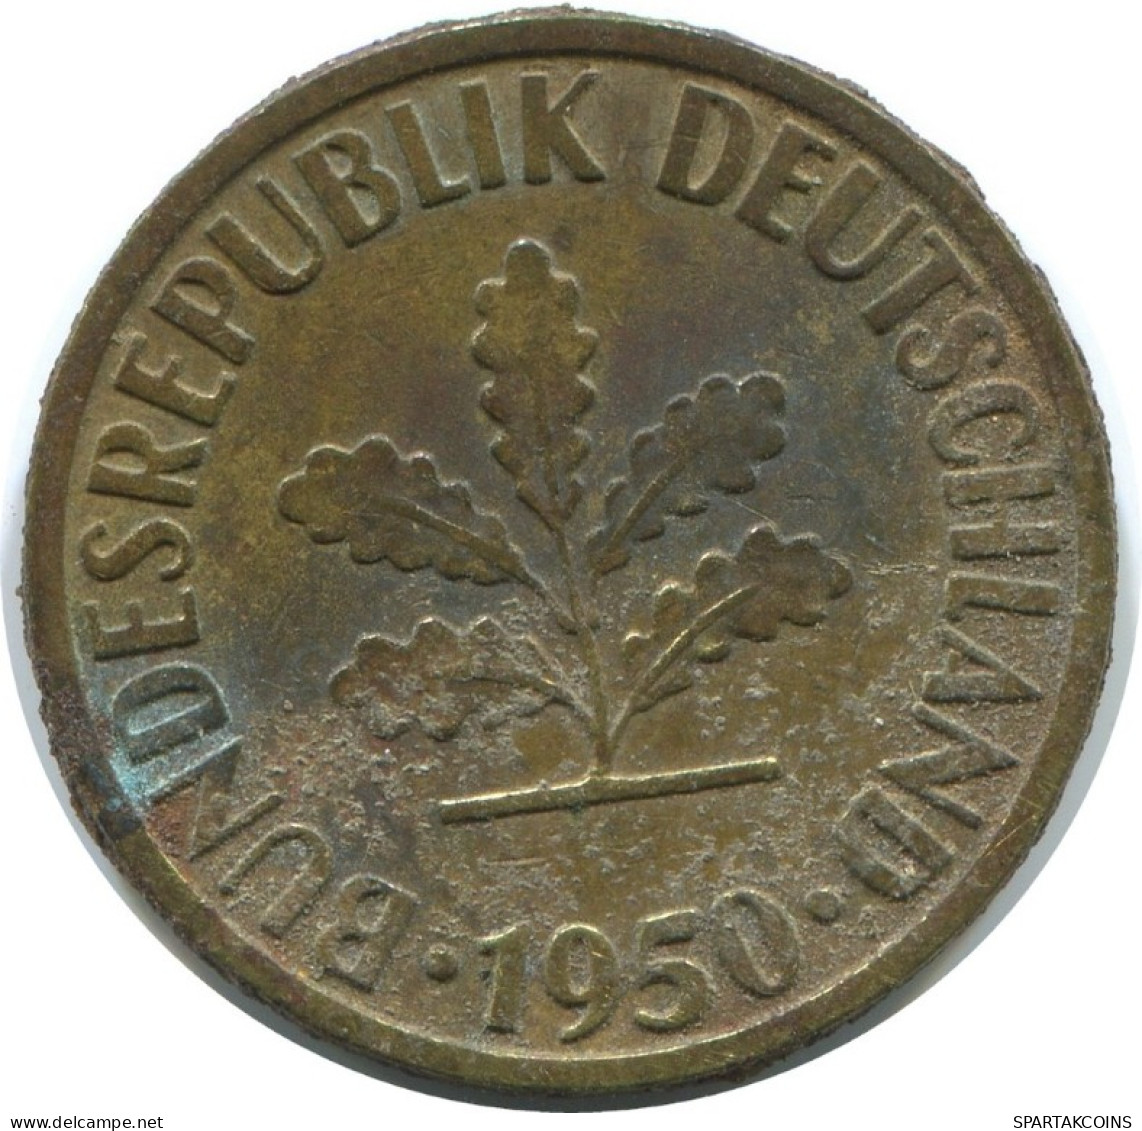 10 PFENNIG 1950 J BRD ALEMANIA Moneda GERMANY #AD851.9.E.A - 10 Pfennig